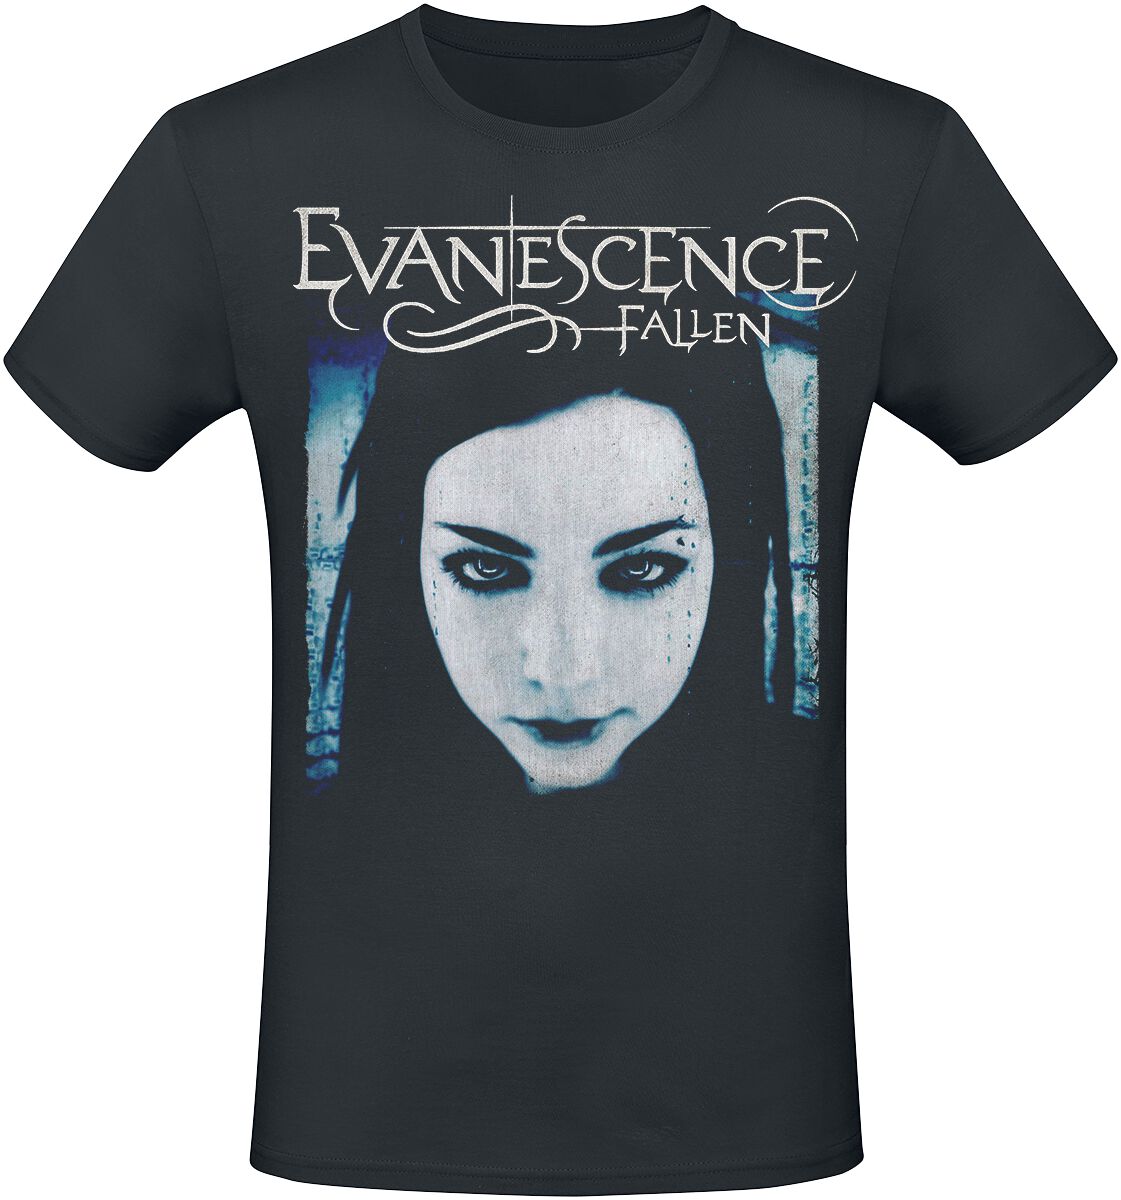 Evanescence T-Shirt - Fallen - S bis XXL - für Männer - Größe S - schwarz  - Lizenziertes Merchandise!